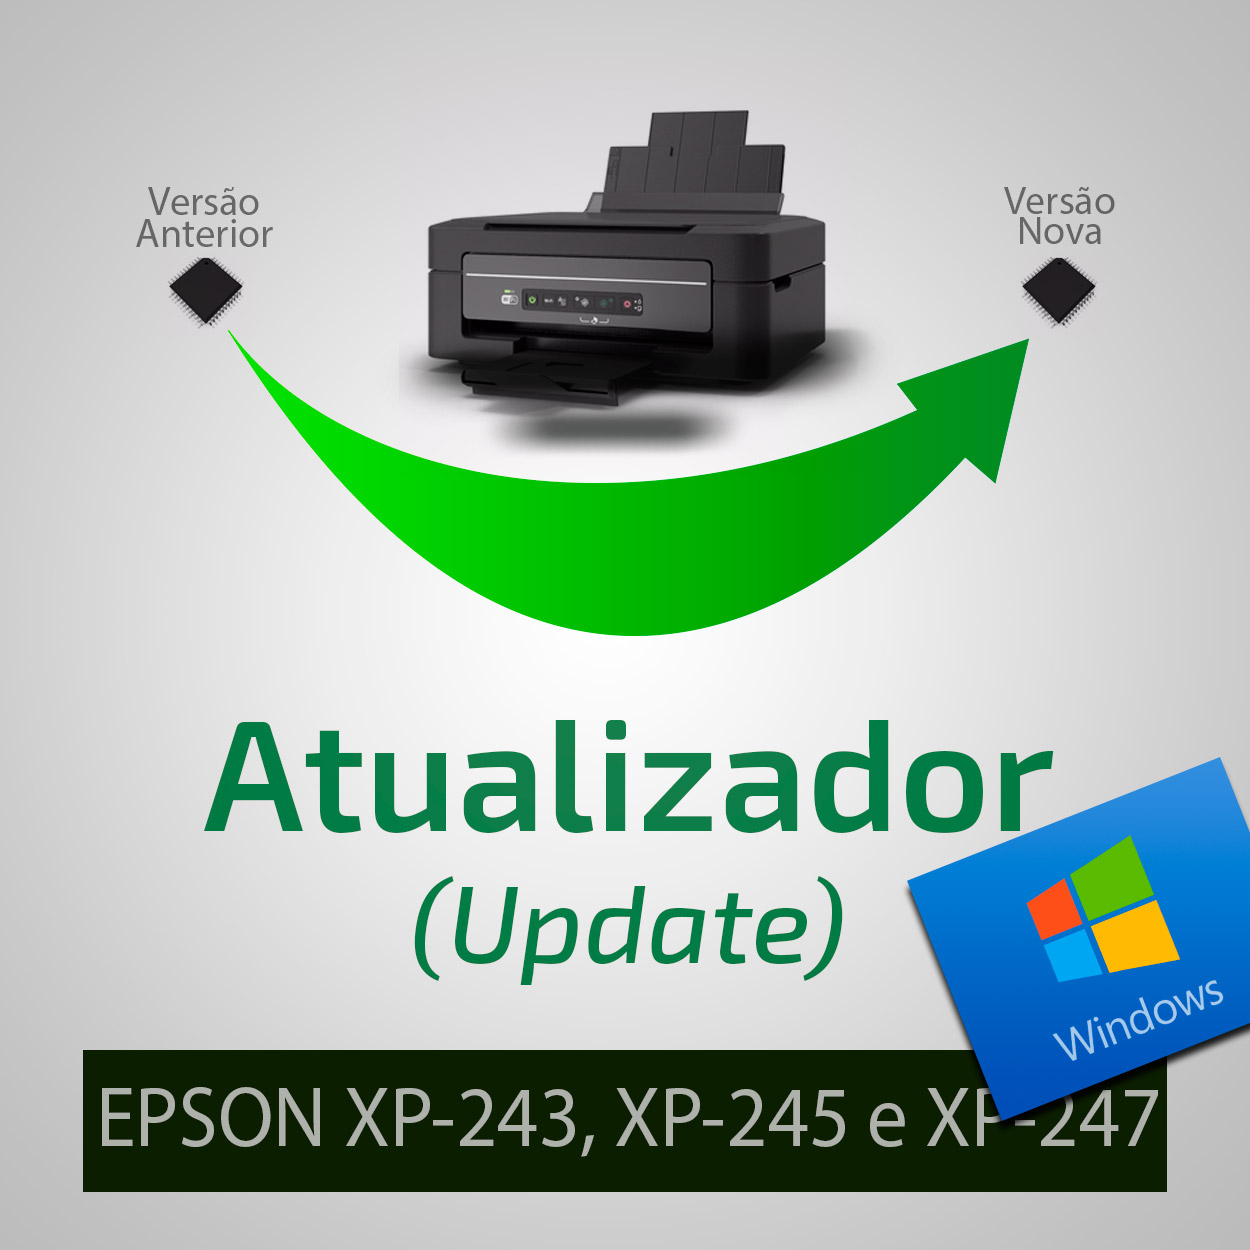 Epson XP-243, XP-245 e XP-247 - Recovery Firmware / Firmware de Recuperação